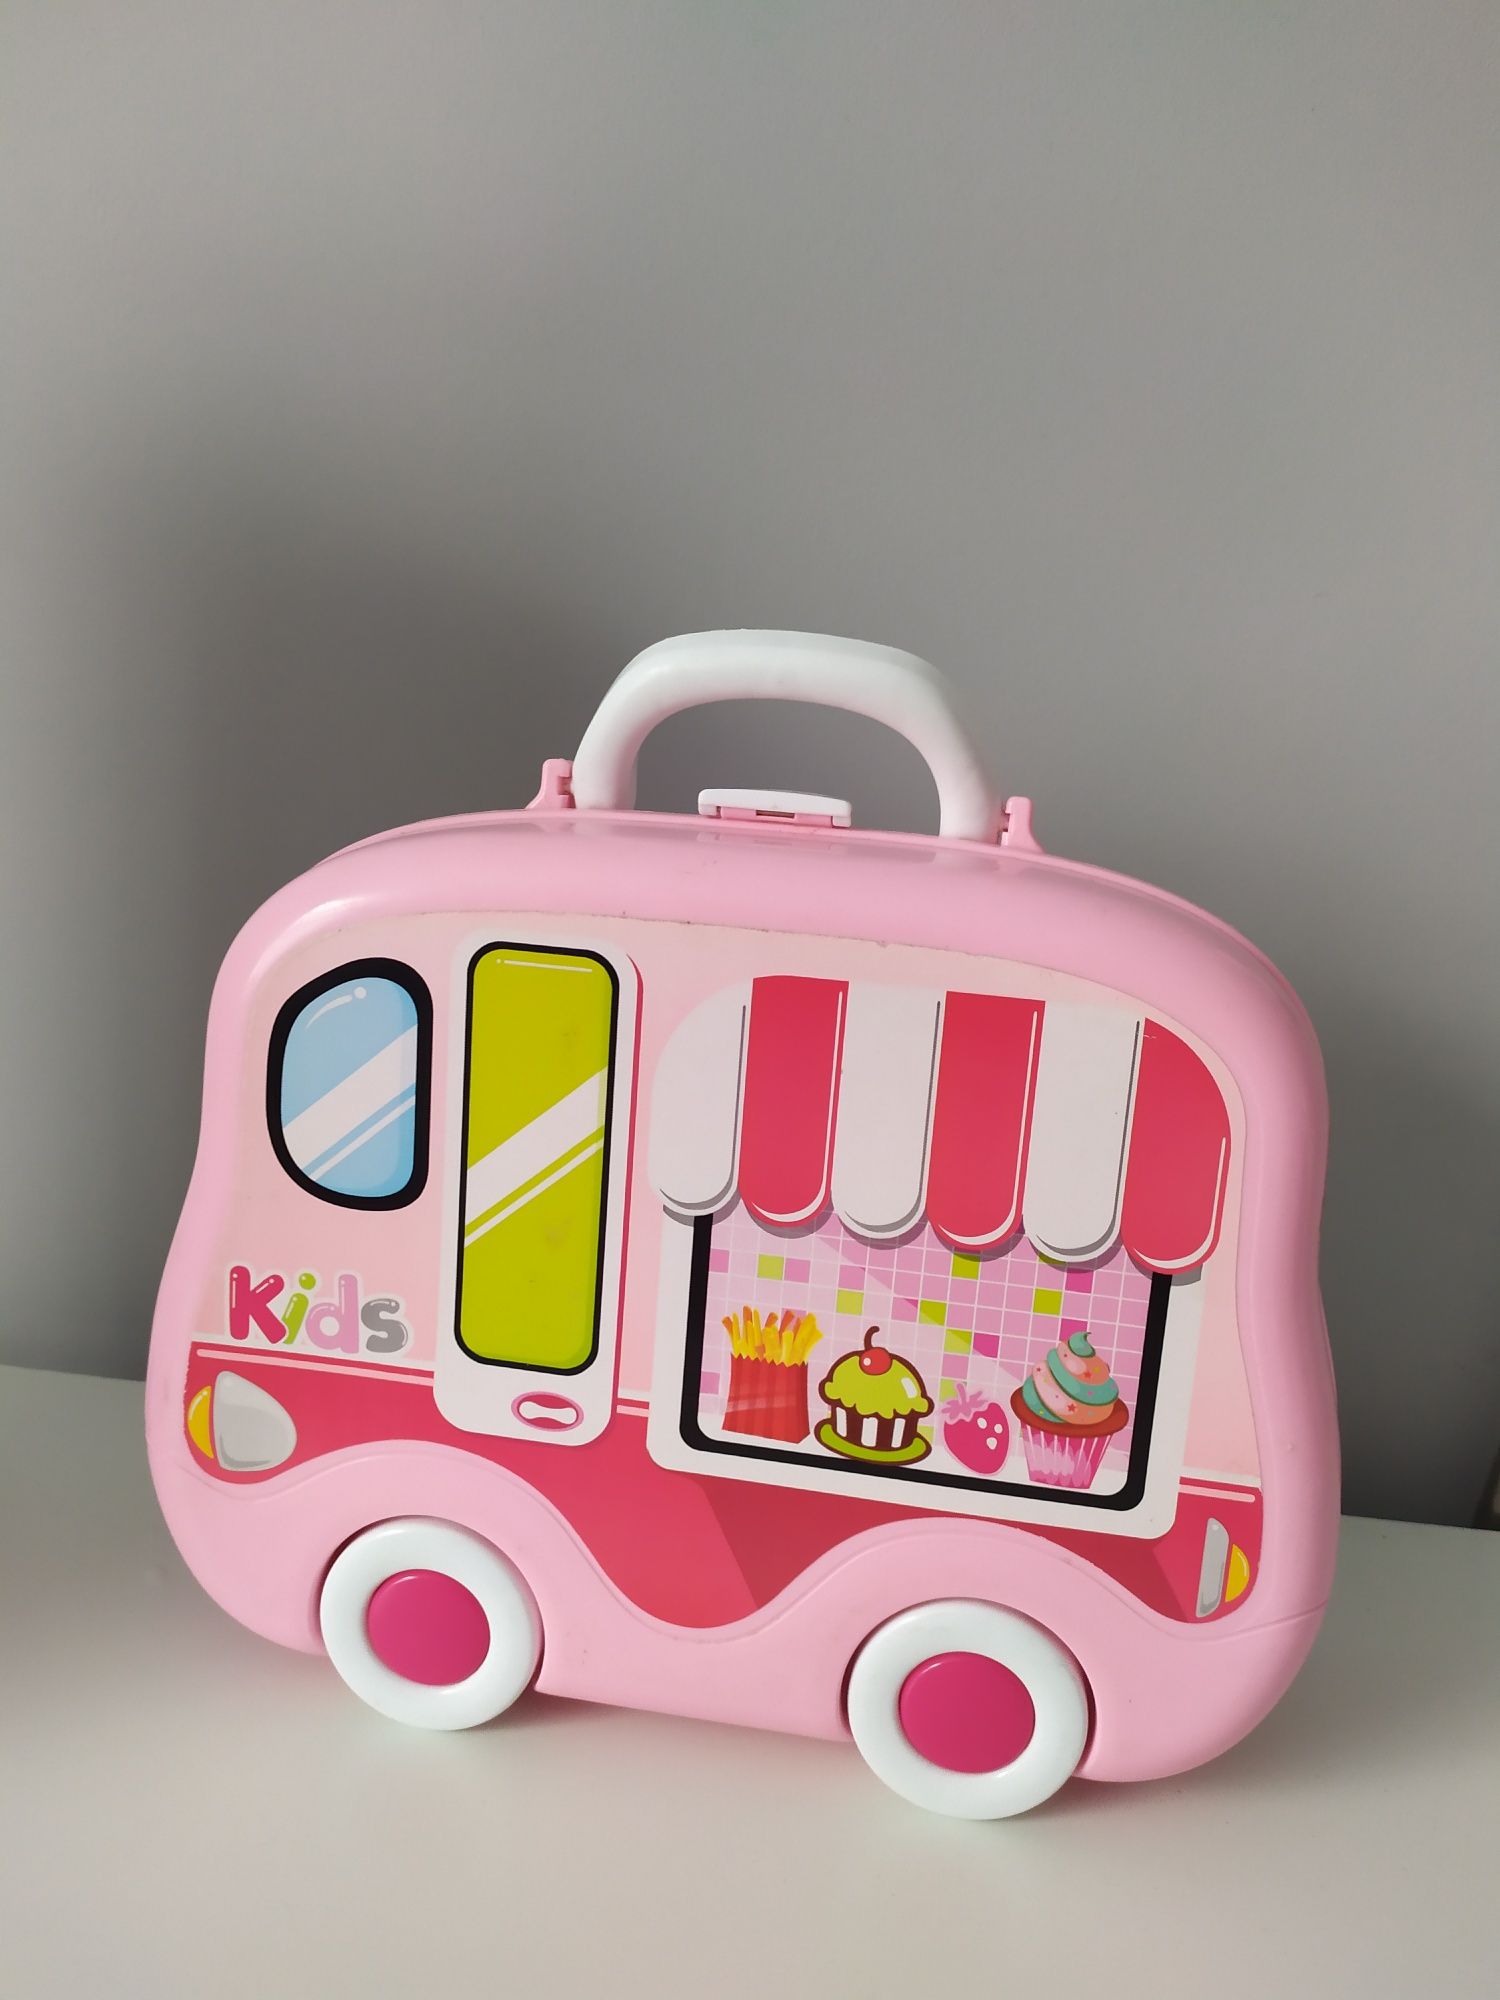 Zabawkowa kuchnia walizka na kółkach

Stan używany widoczny na zdjęcia